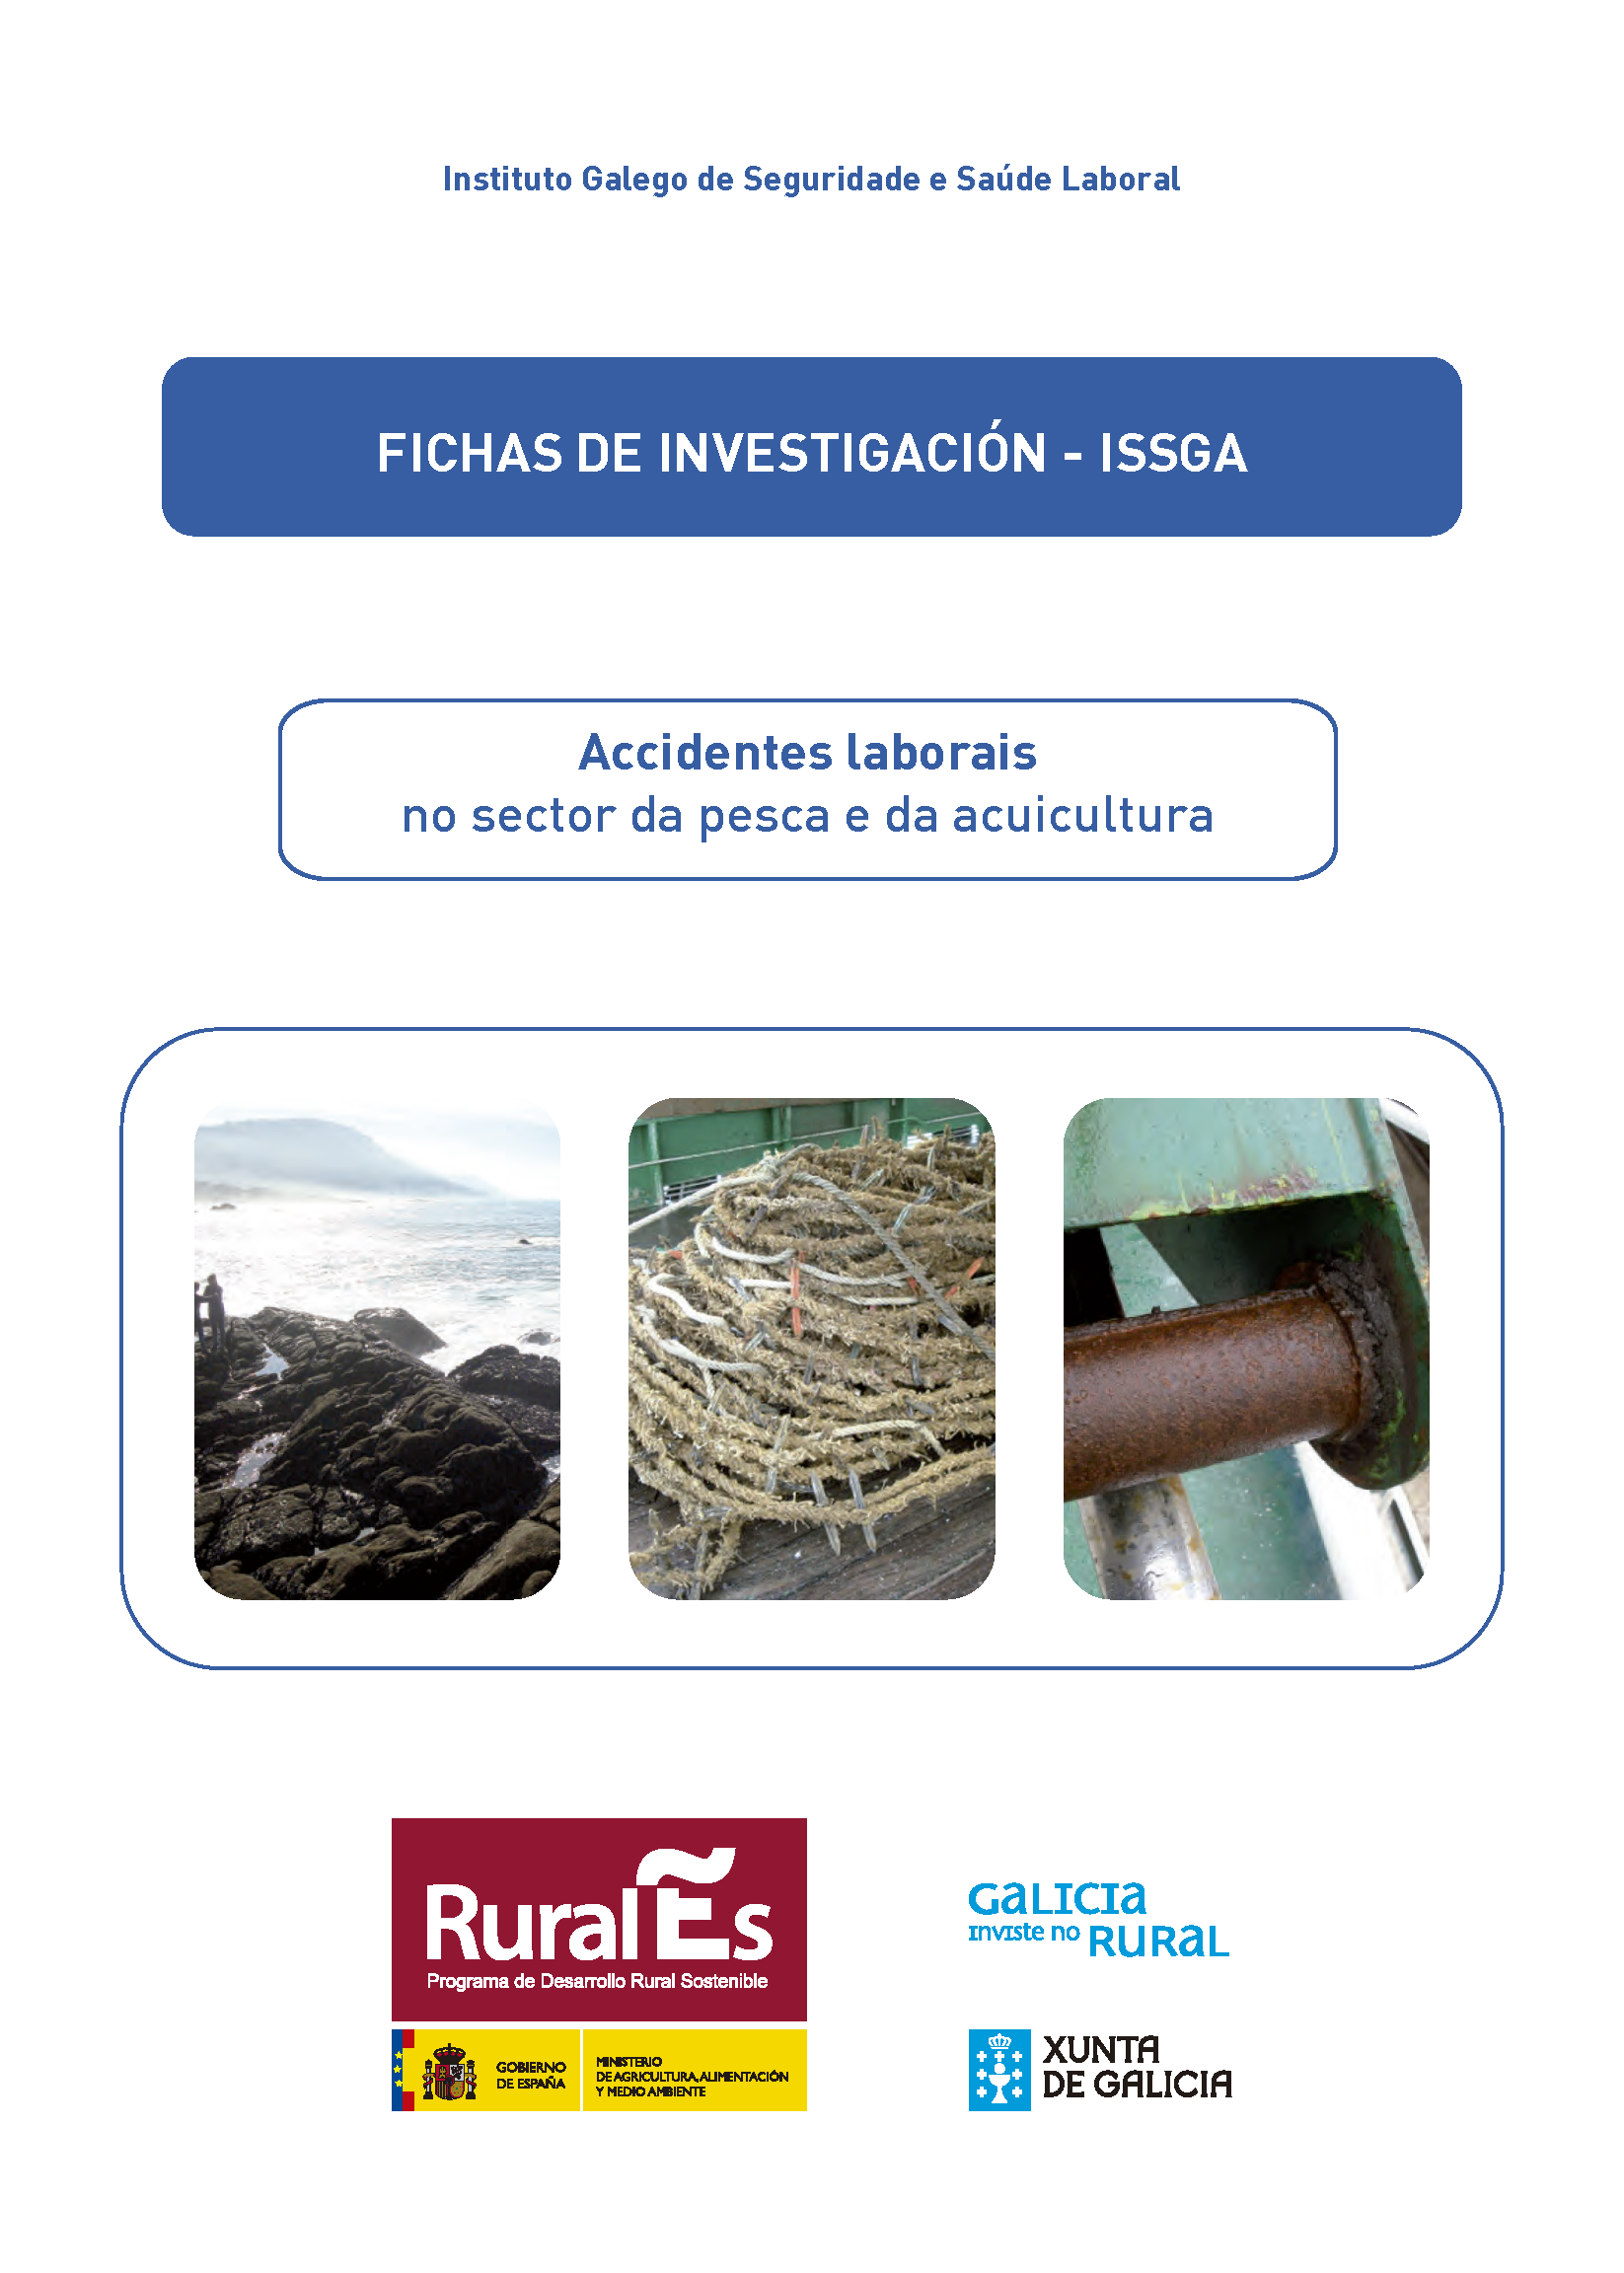 Fichas de investigación - ISSGA - Accidentes laborais no sector da pesca da da acuicultura